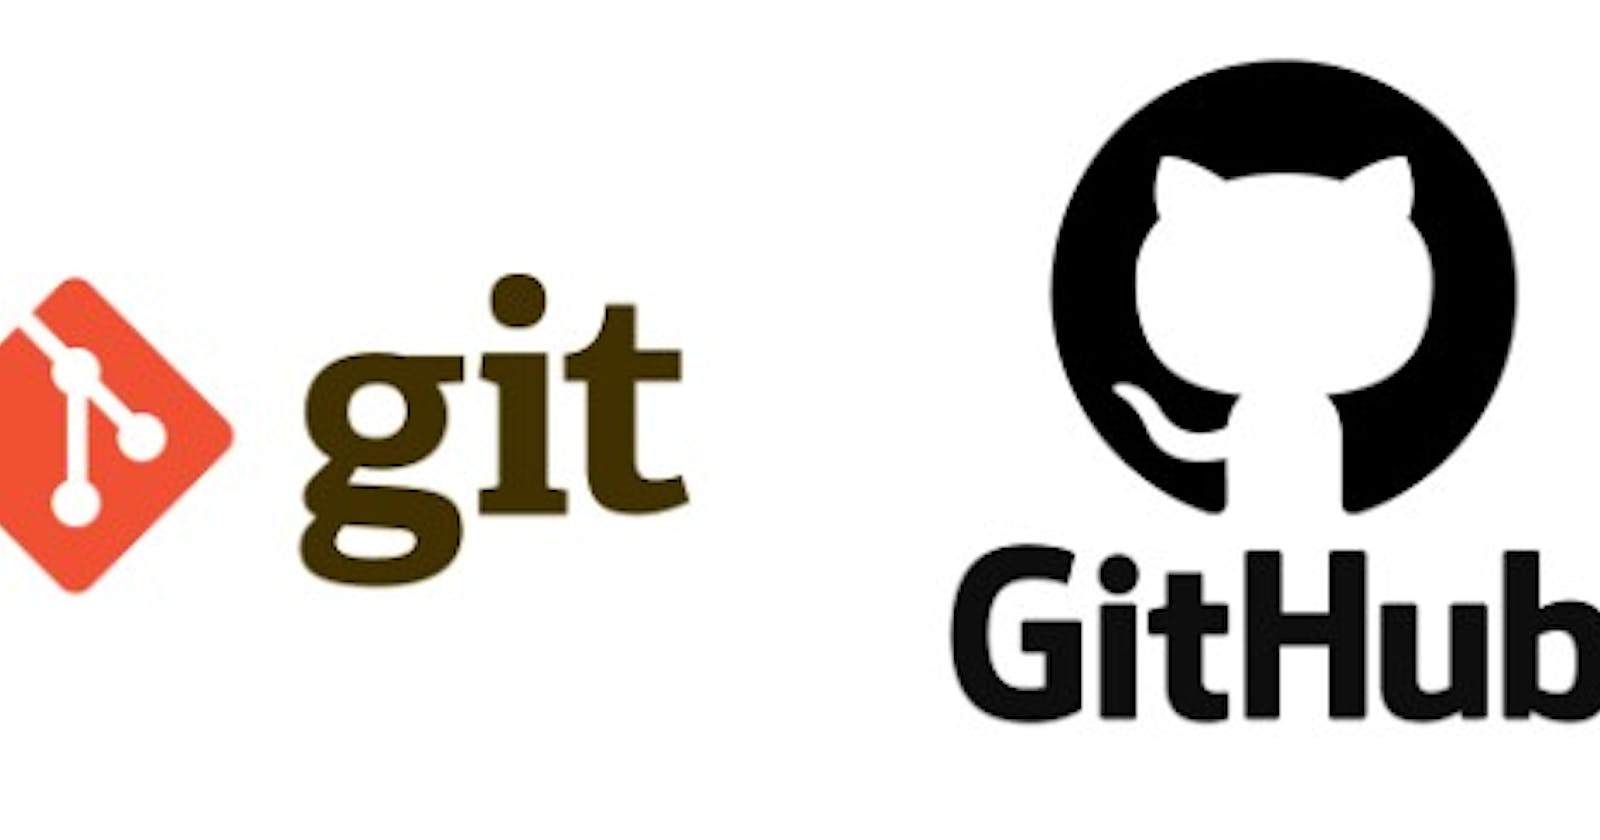 Git/Github in a nutshell!